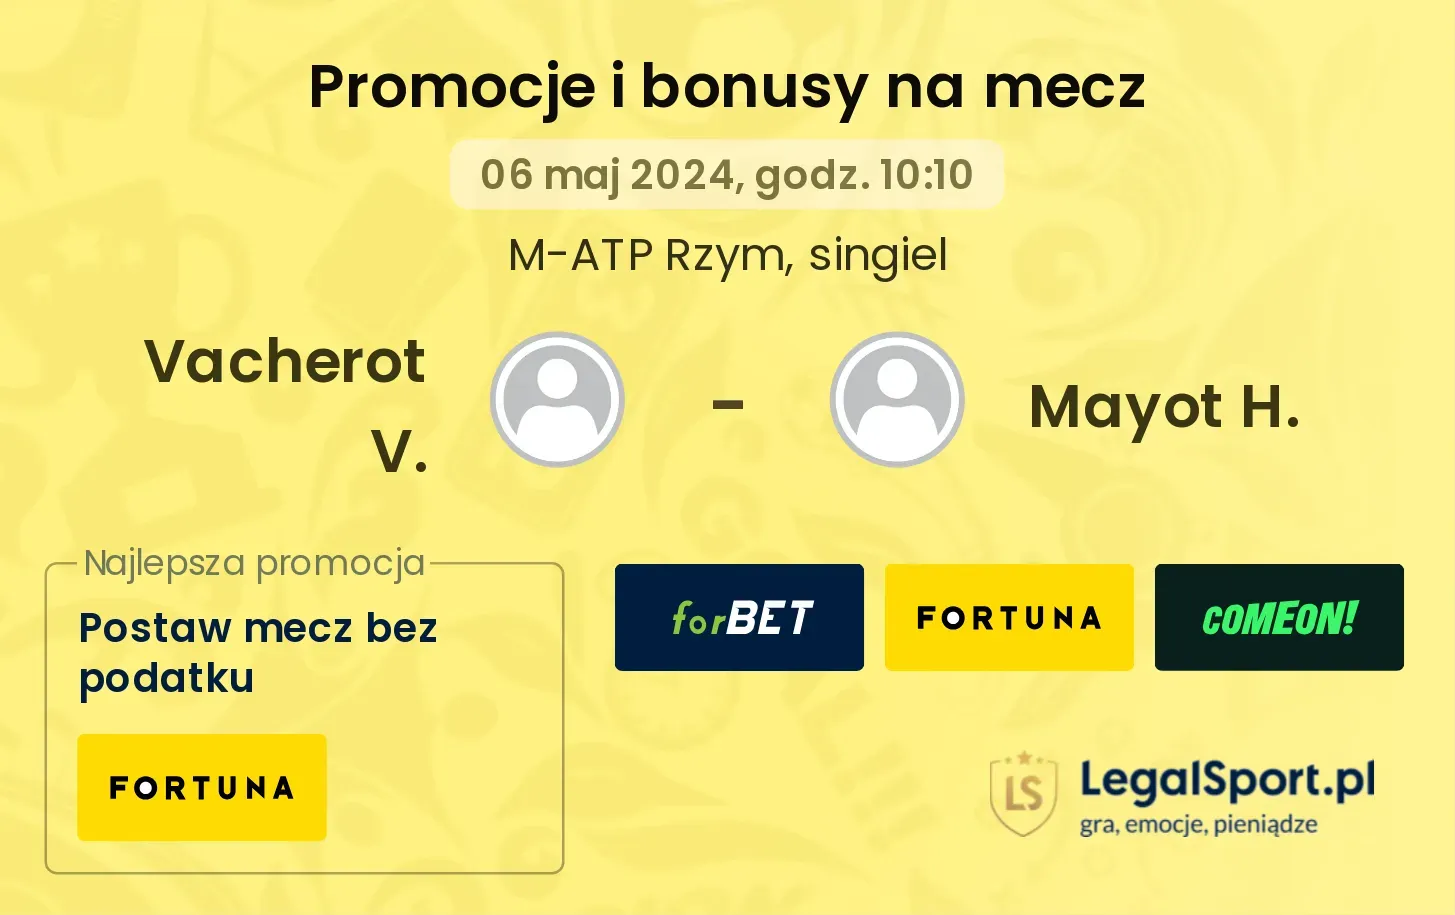 Vacherot V. - Mayot H. promocje bonusy na mecz